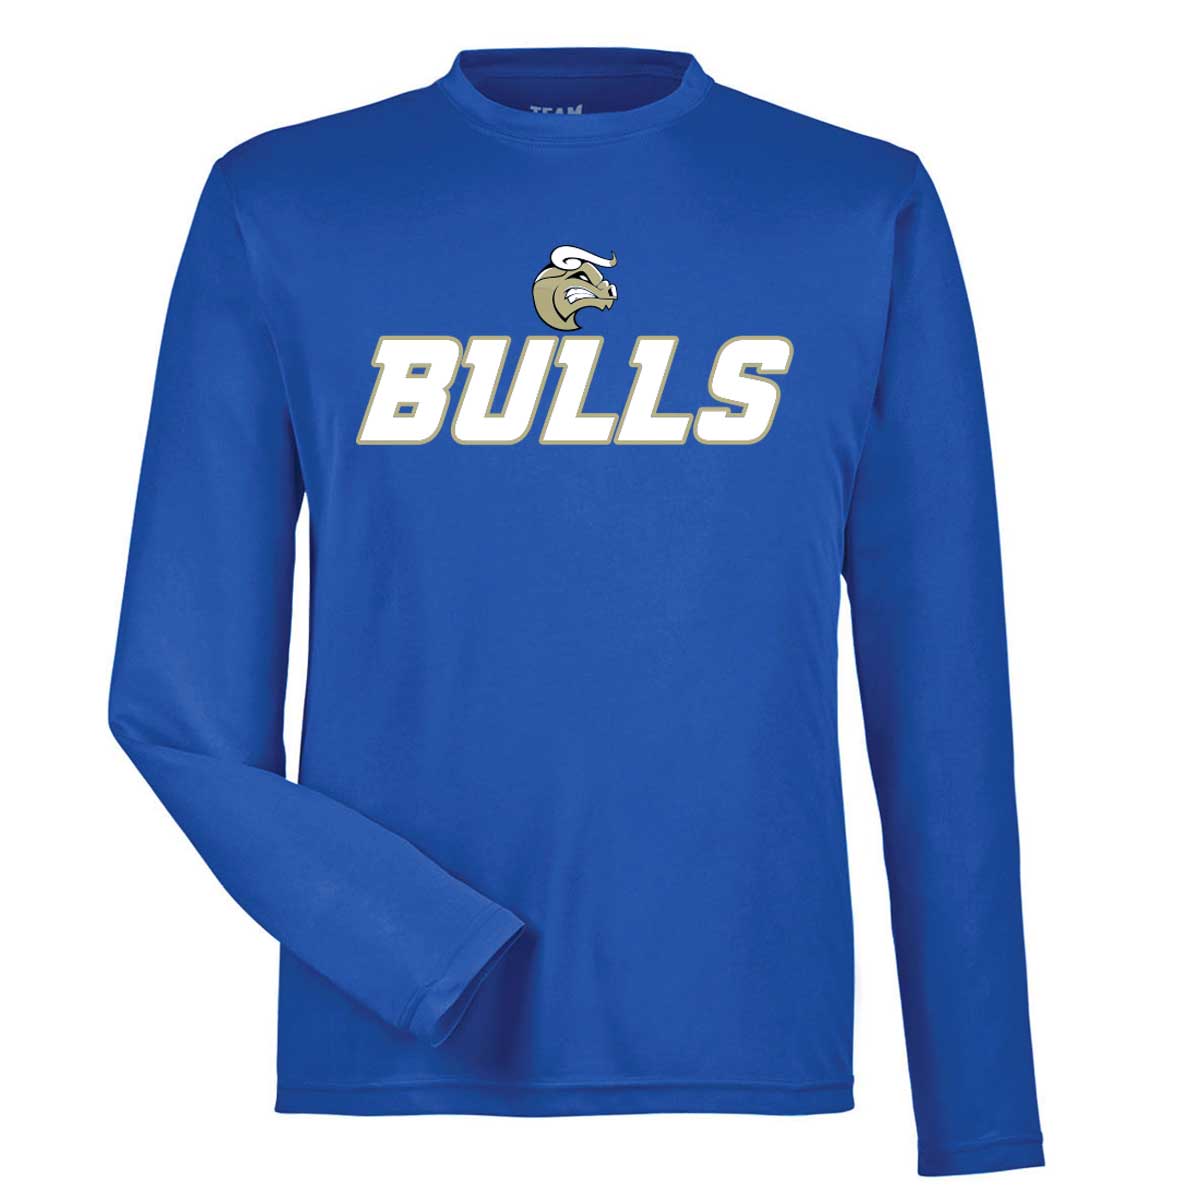 Bulls Basketball Shooting Shirt